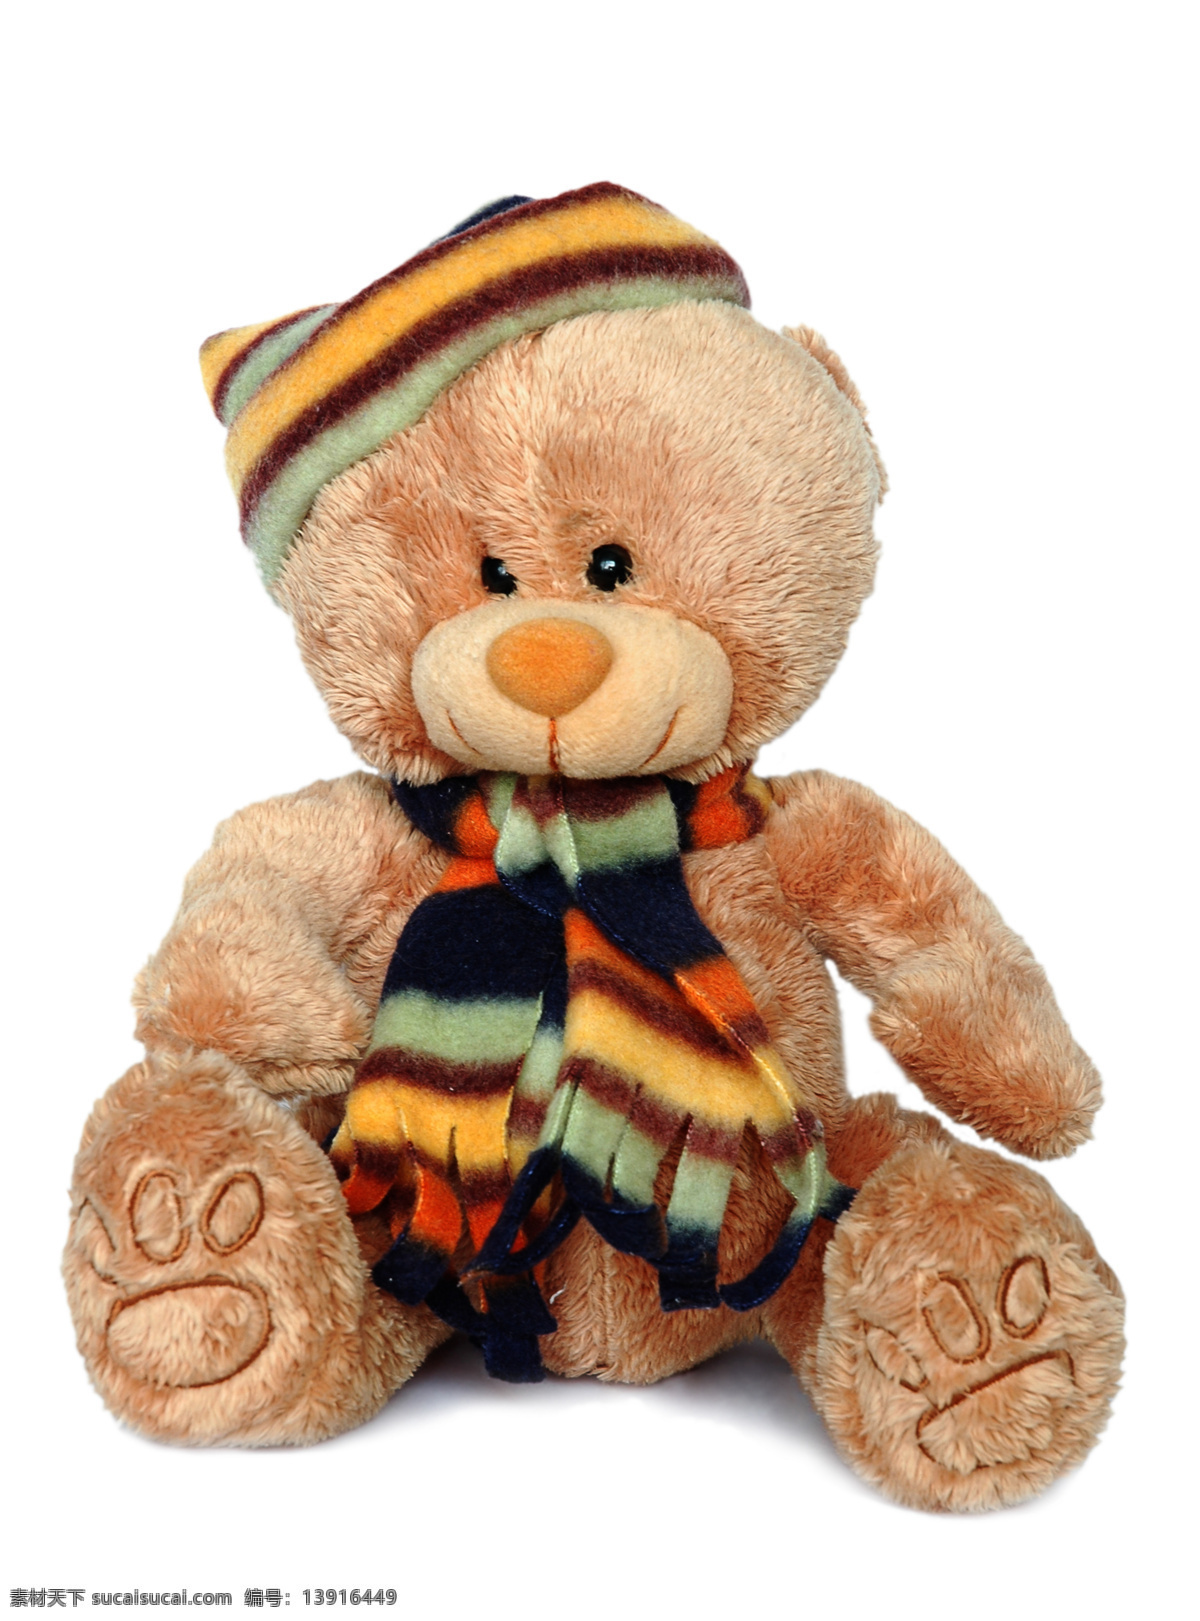 泰迪熊 小熊 卡通熊 玩具 熊宝宝 玩具熊 毛绒玩具 公仔 礼物 情人节 小熊玩具 儿童玩具 小熊公仔 公仔熊 熊娃娃 商务 人物 科技 运动 生活百科